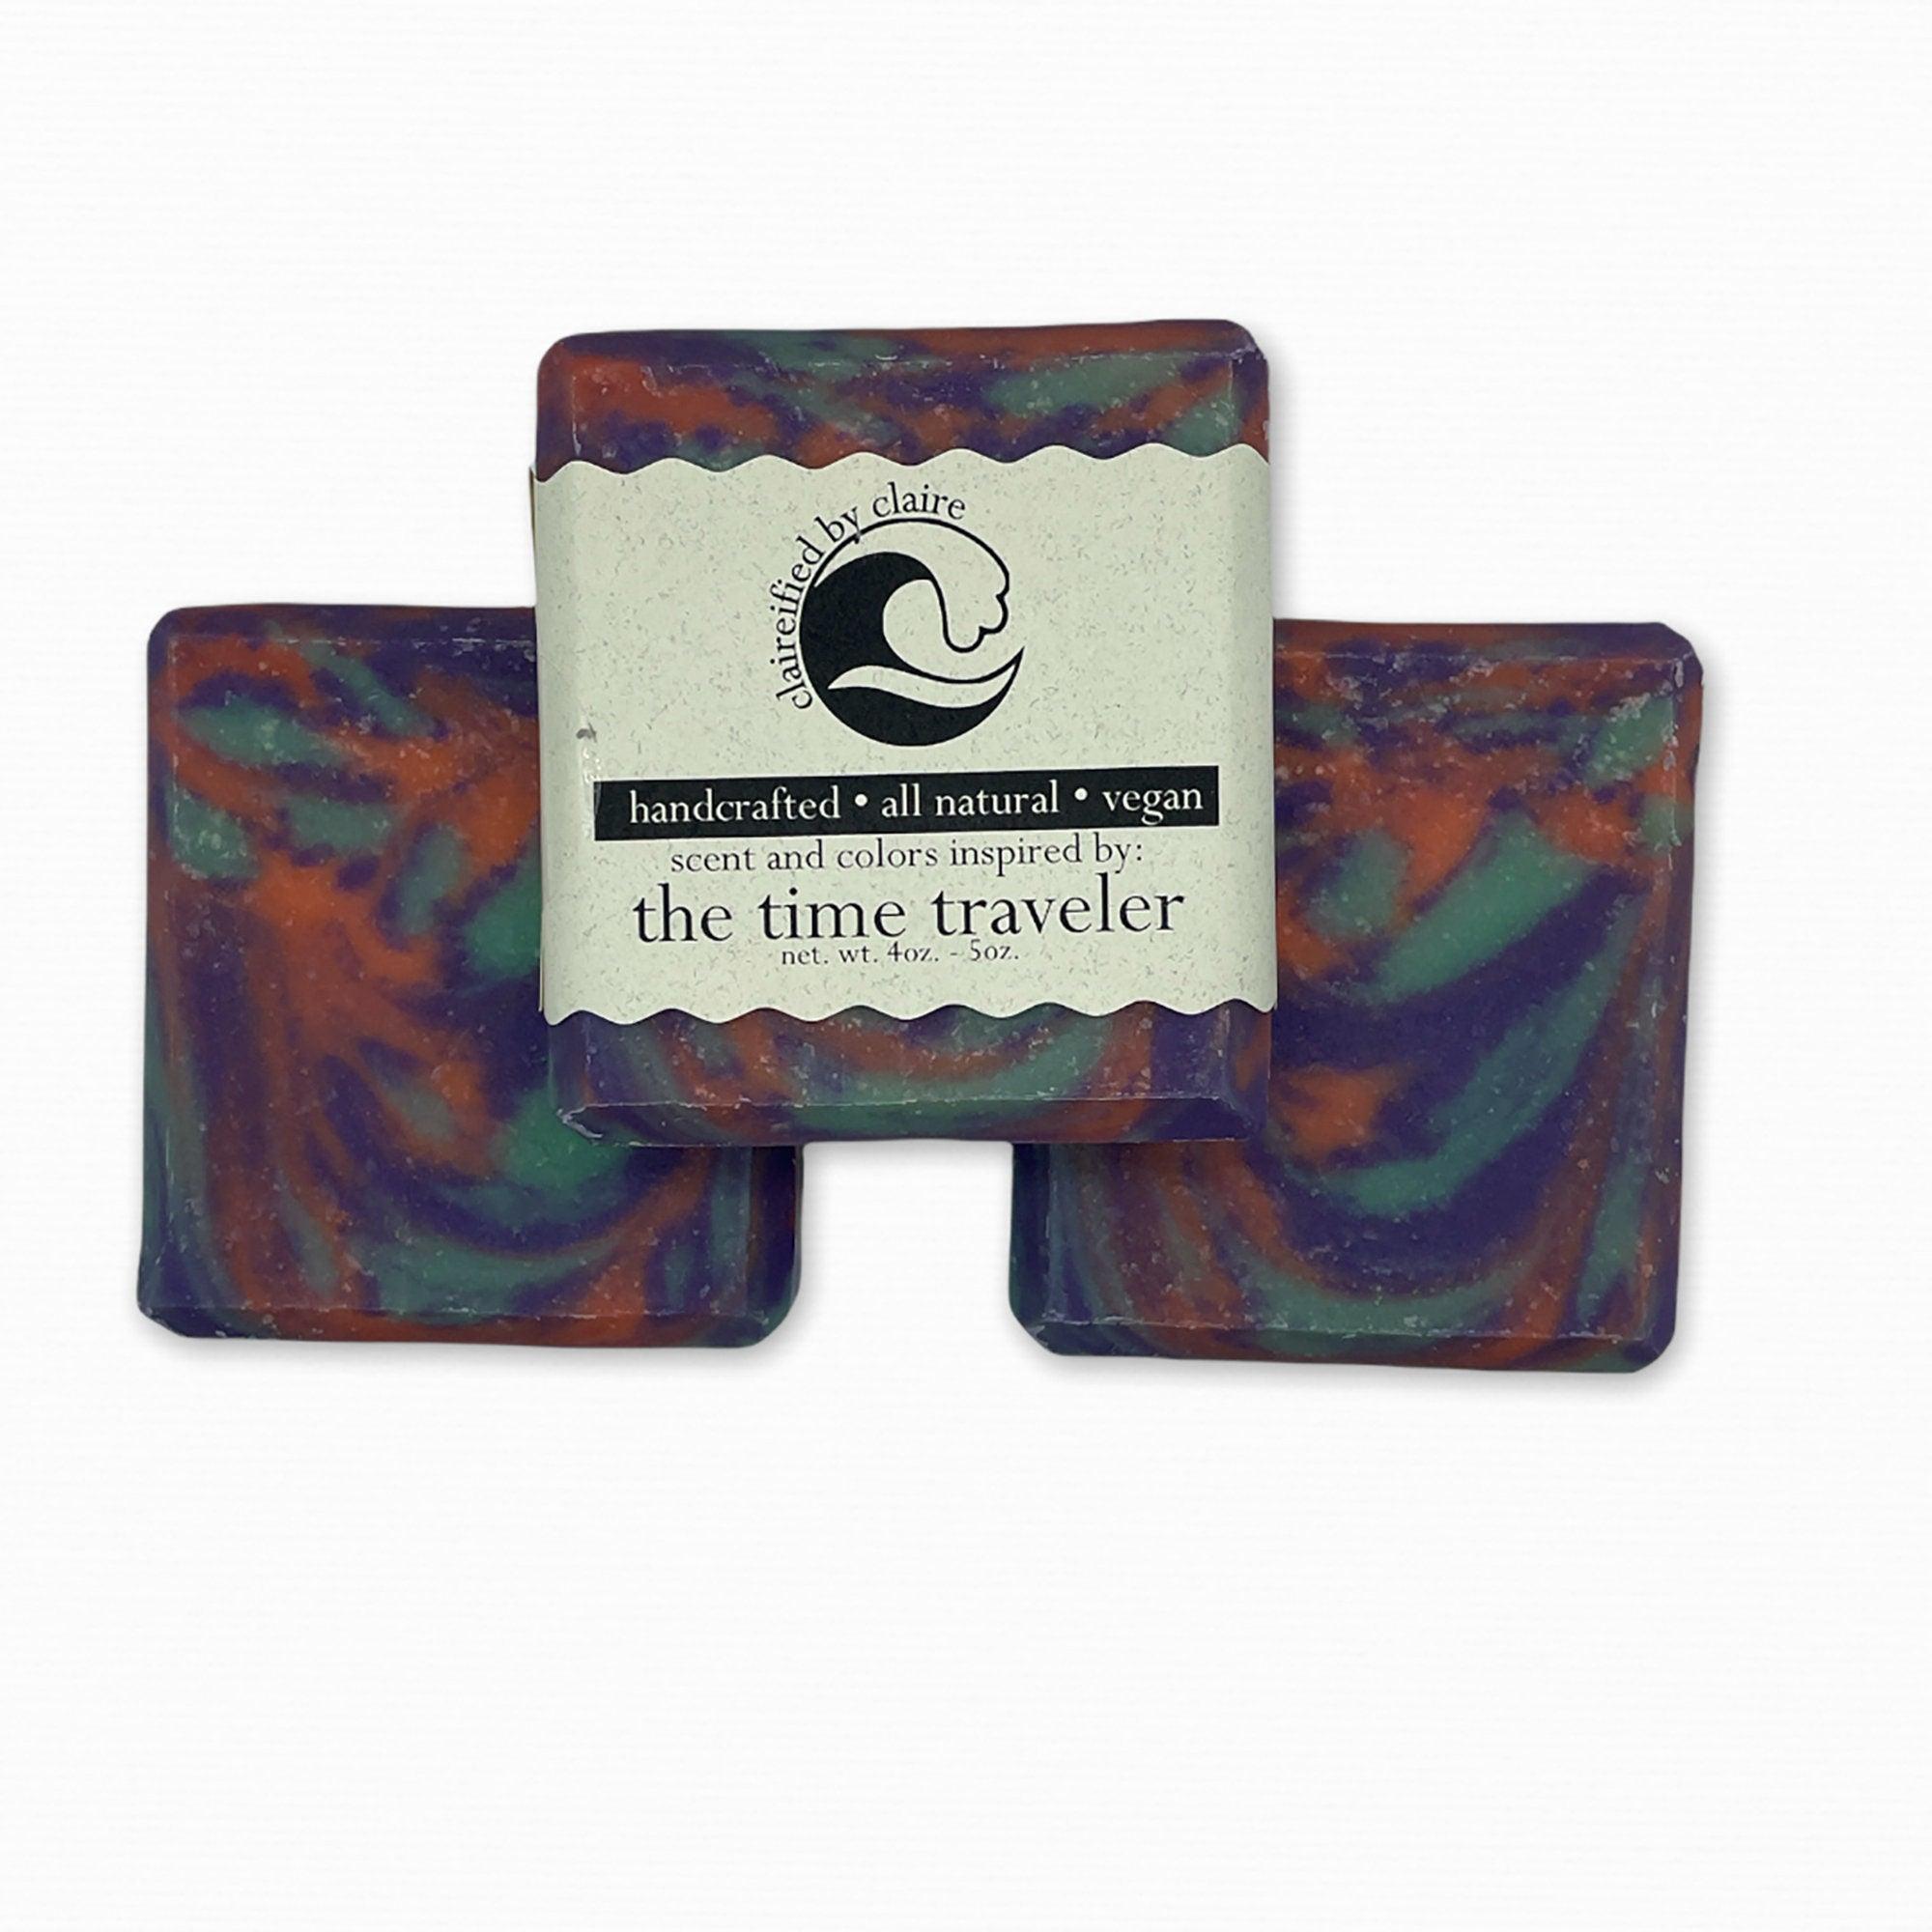 The Time Traveler Inspired Soap